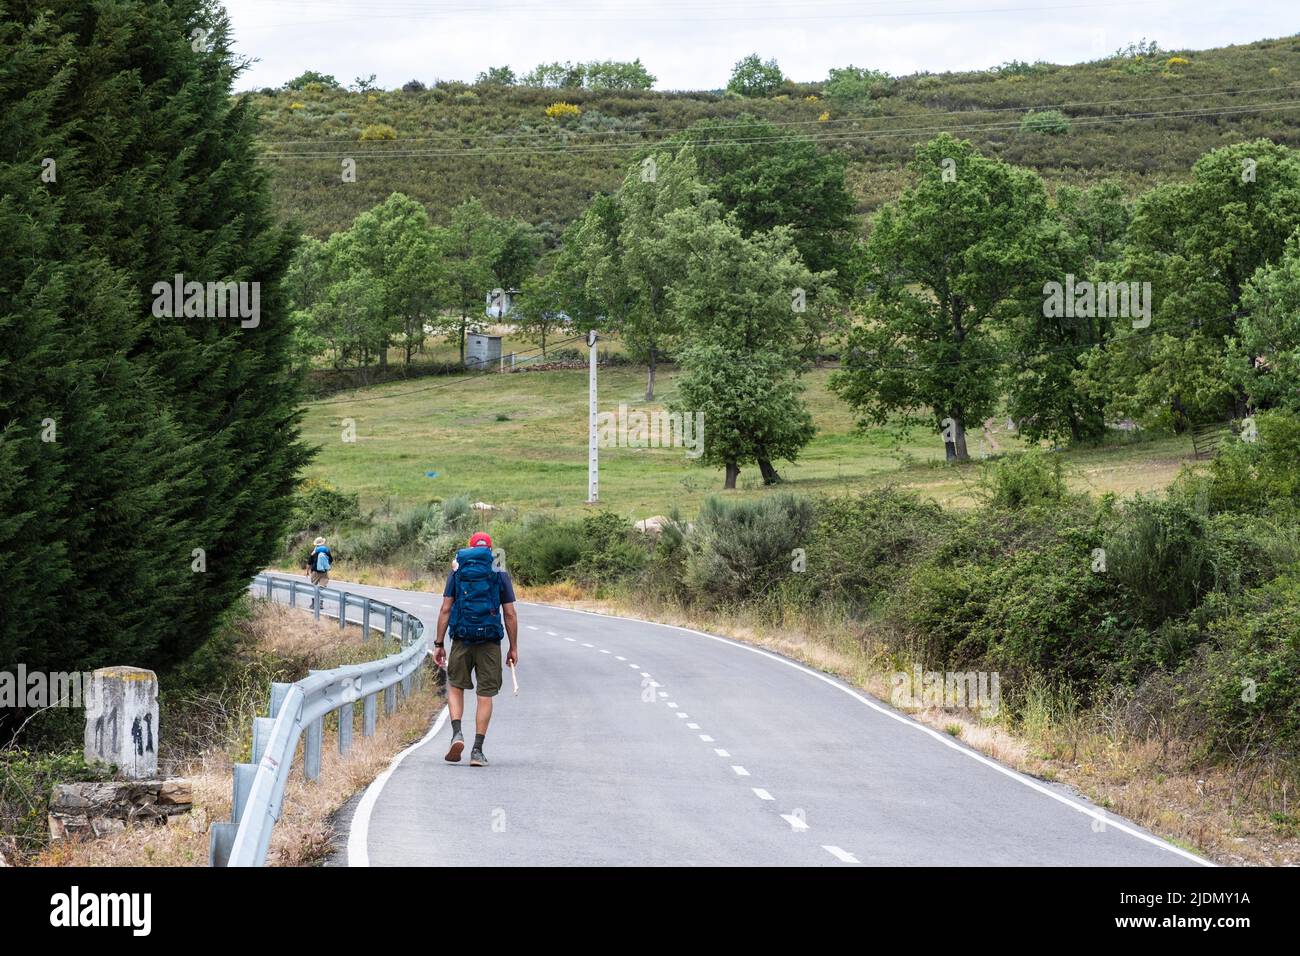 Spanien, Kastilien und Leon. Camino de Santiago, auf dem Weg nach Molinaseca, nutzt eine asphaltierte Autobahn für kurze Strecke. Stockfoto